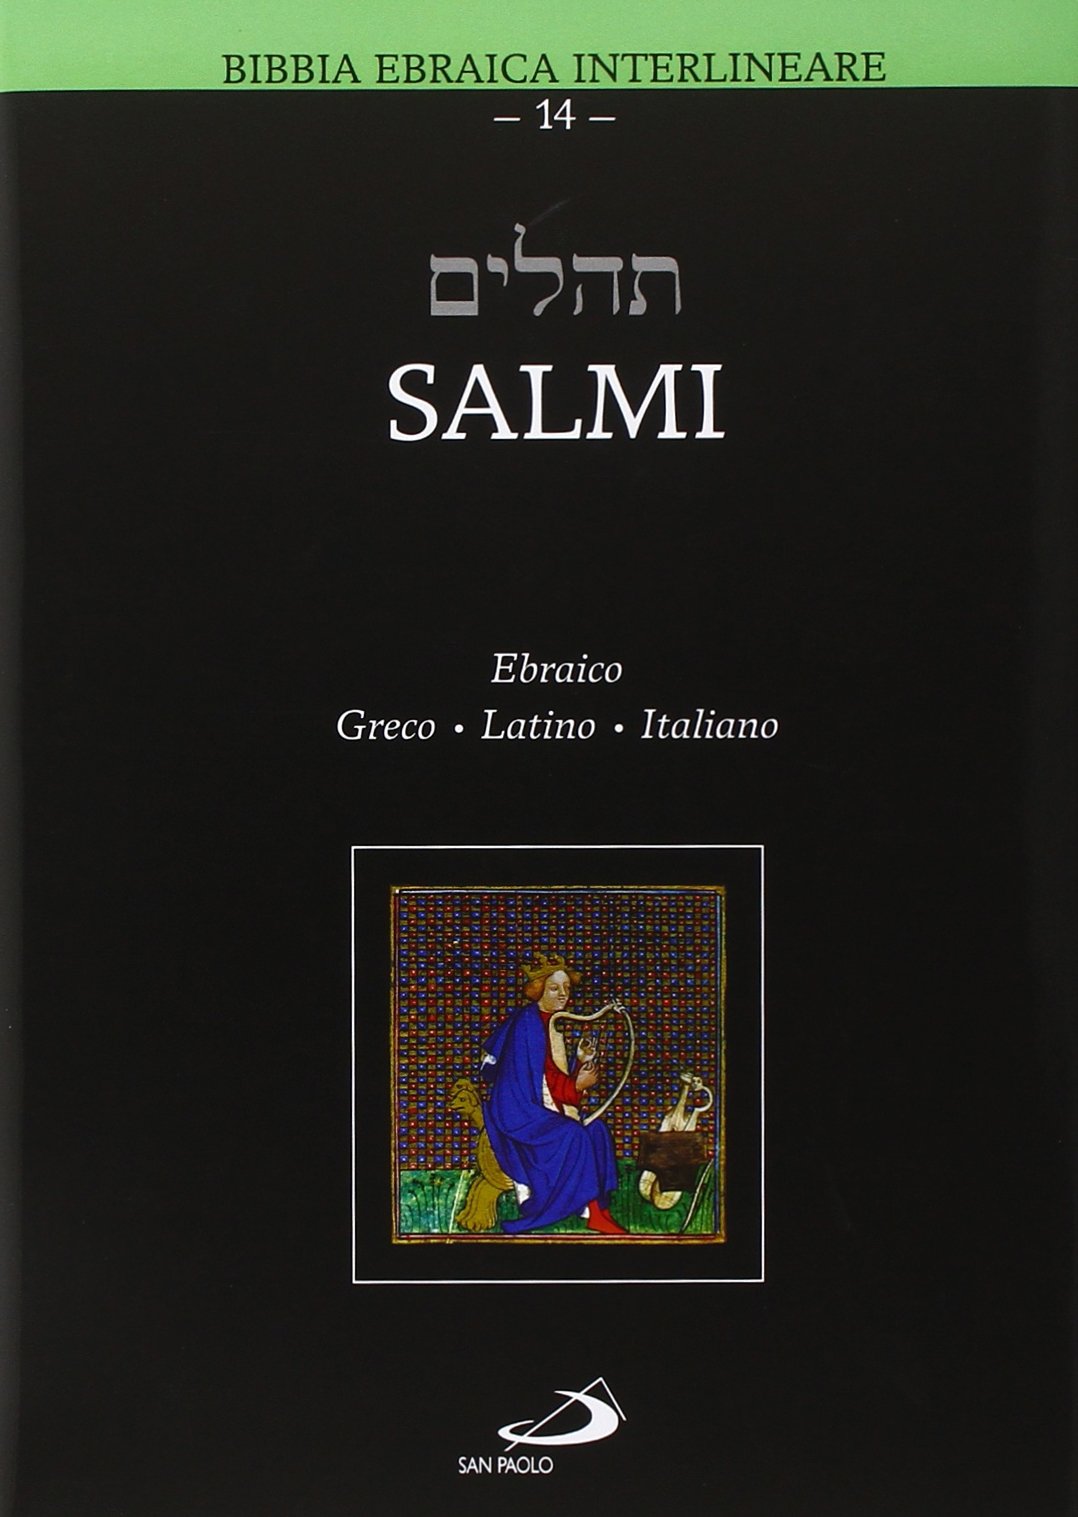 Libri Marco Zappella - Salmi. Ebraico Greco Latino Italiano NUOVO SIGILLATO, EDIZIONE DEL 01/02/2015 SUBITO DISPONIBILE